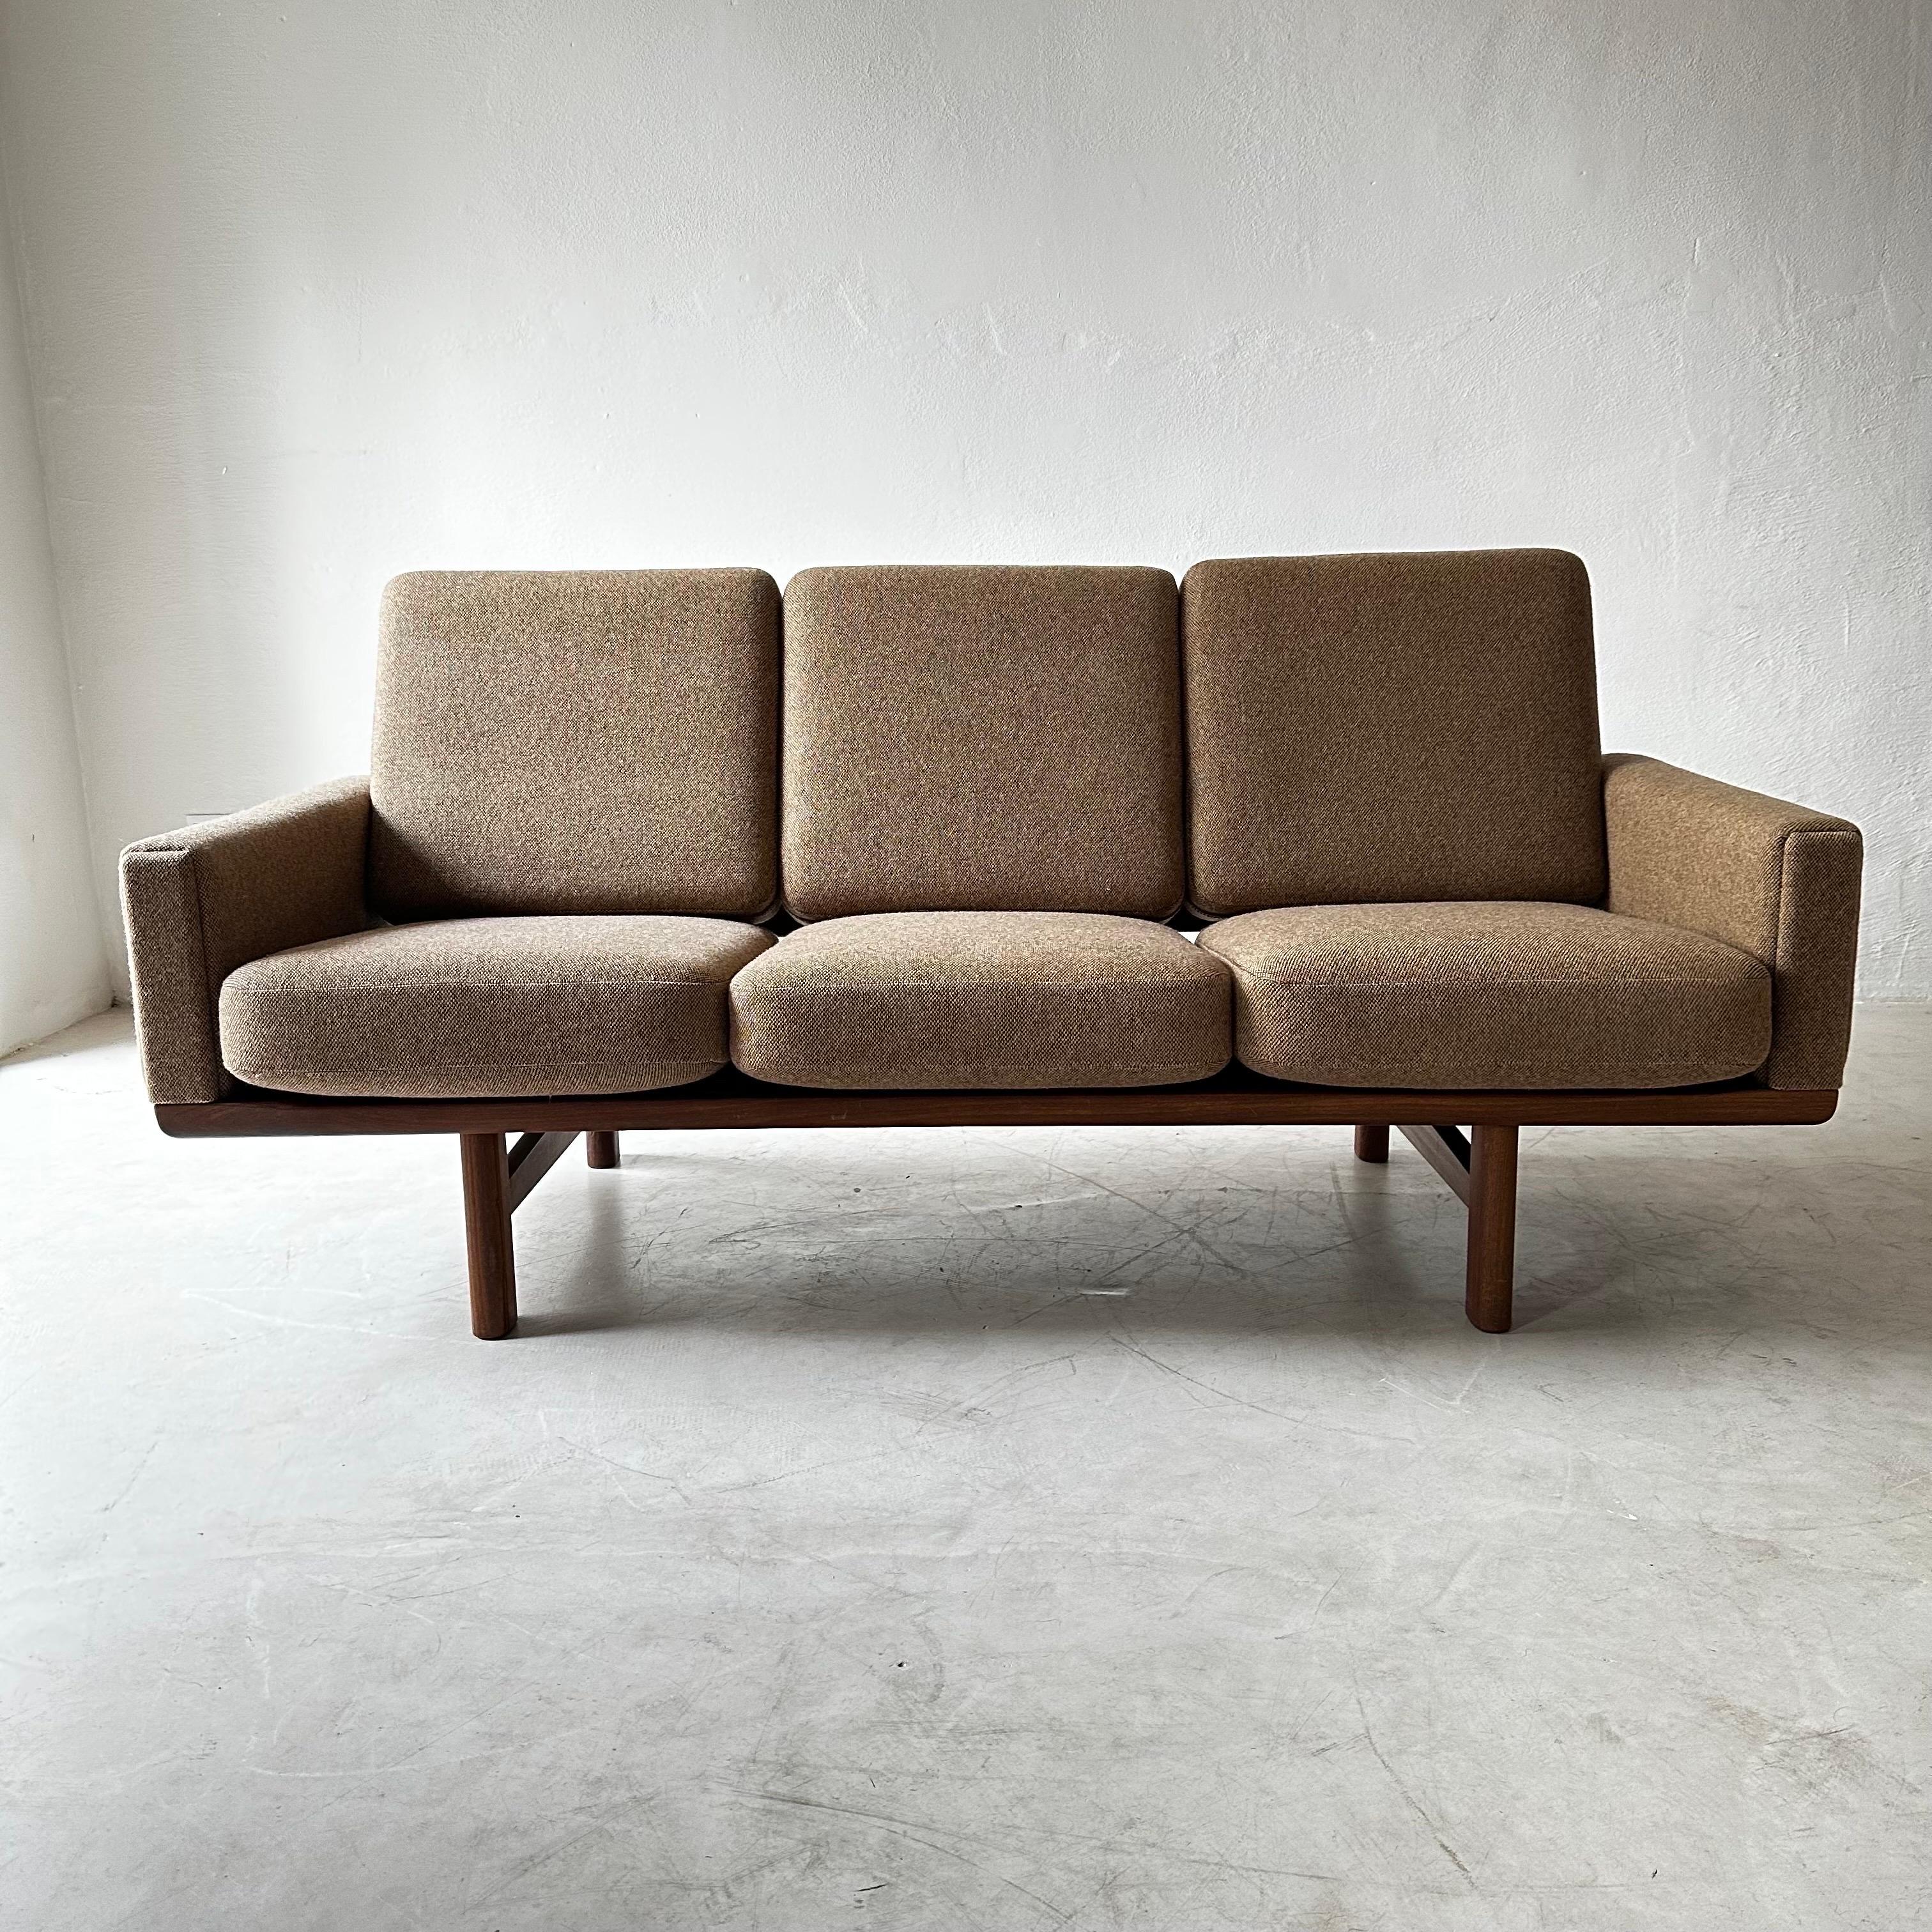 Scandinavian Modern Three-Seat Teak-Framed Sofa, Model GE-236, by Hans Wegner for GETAMA For Sale